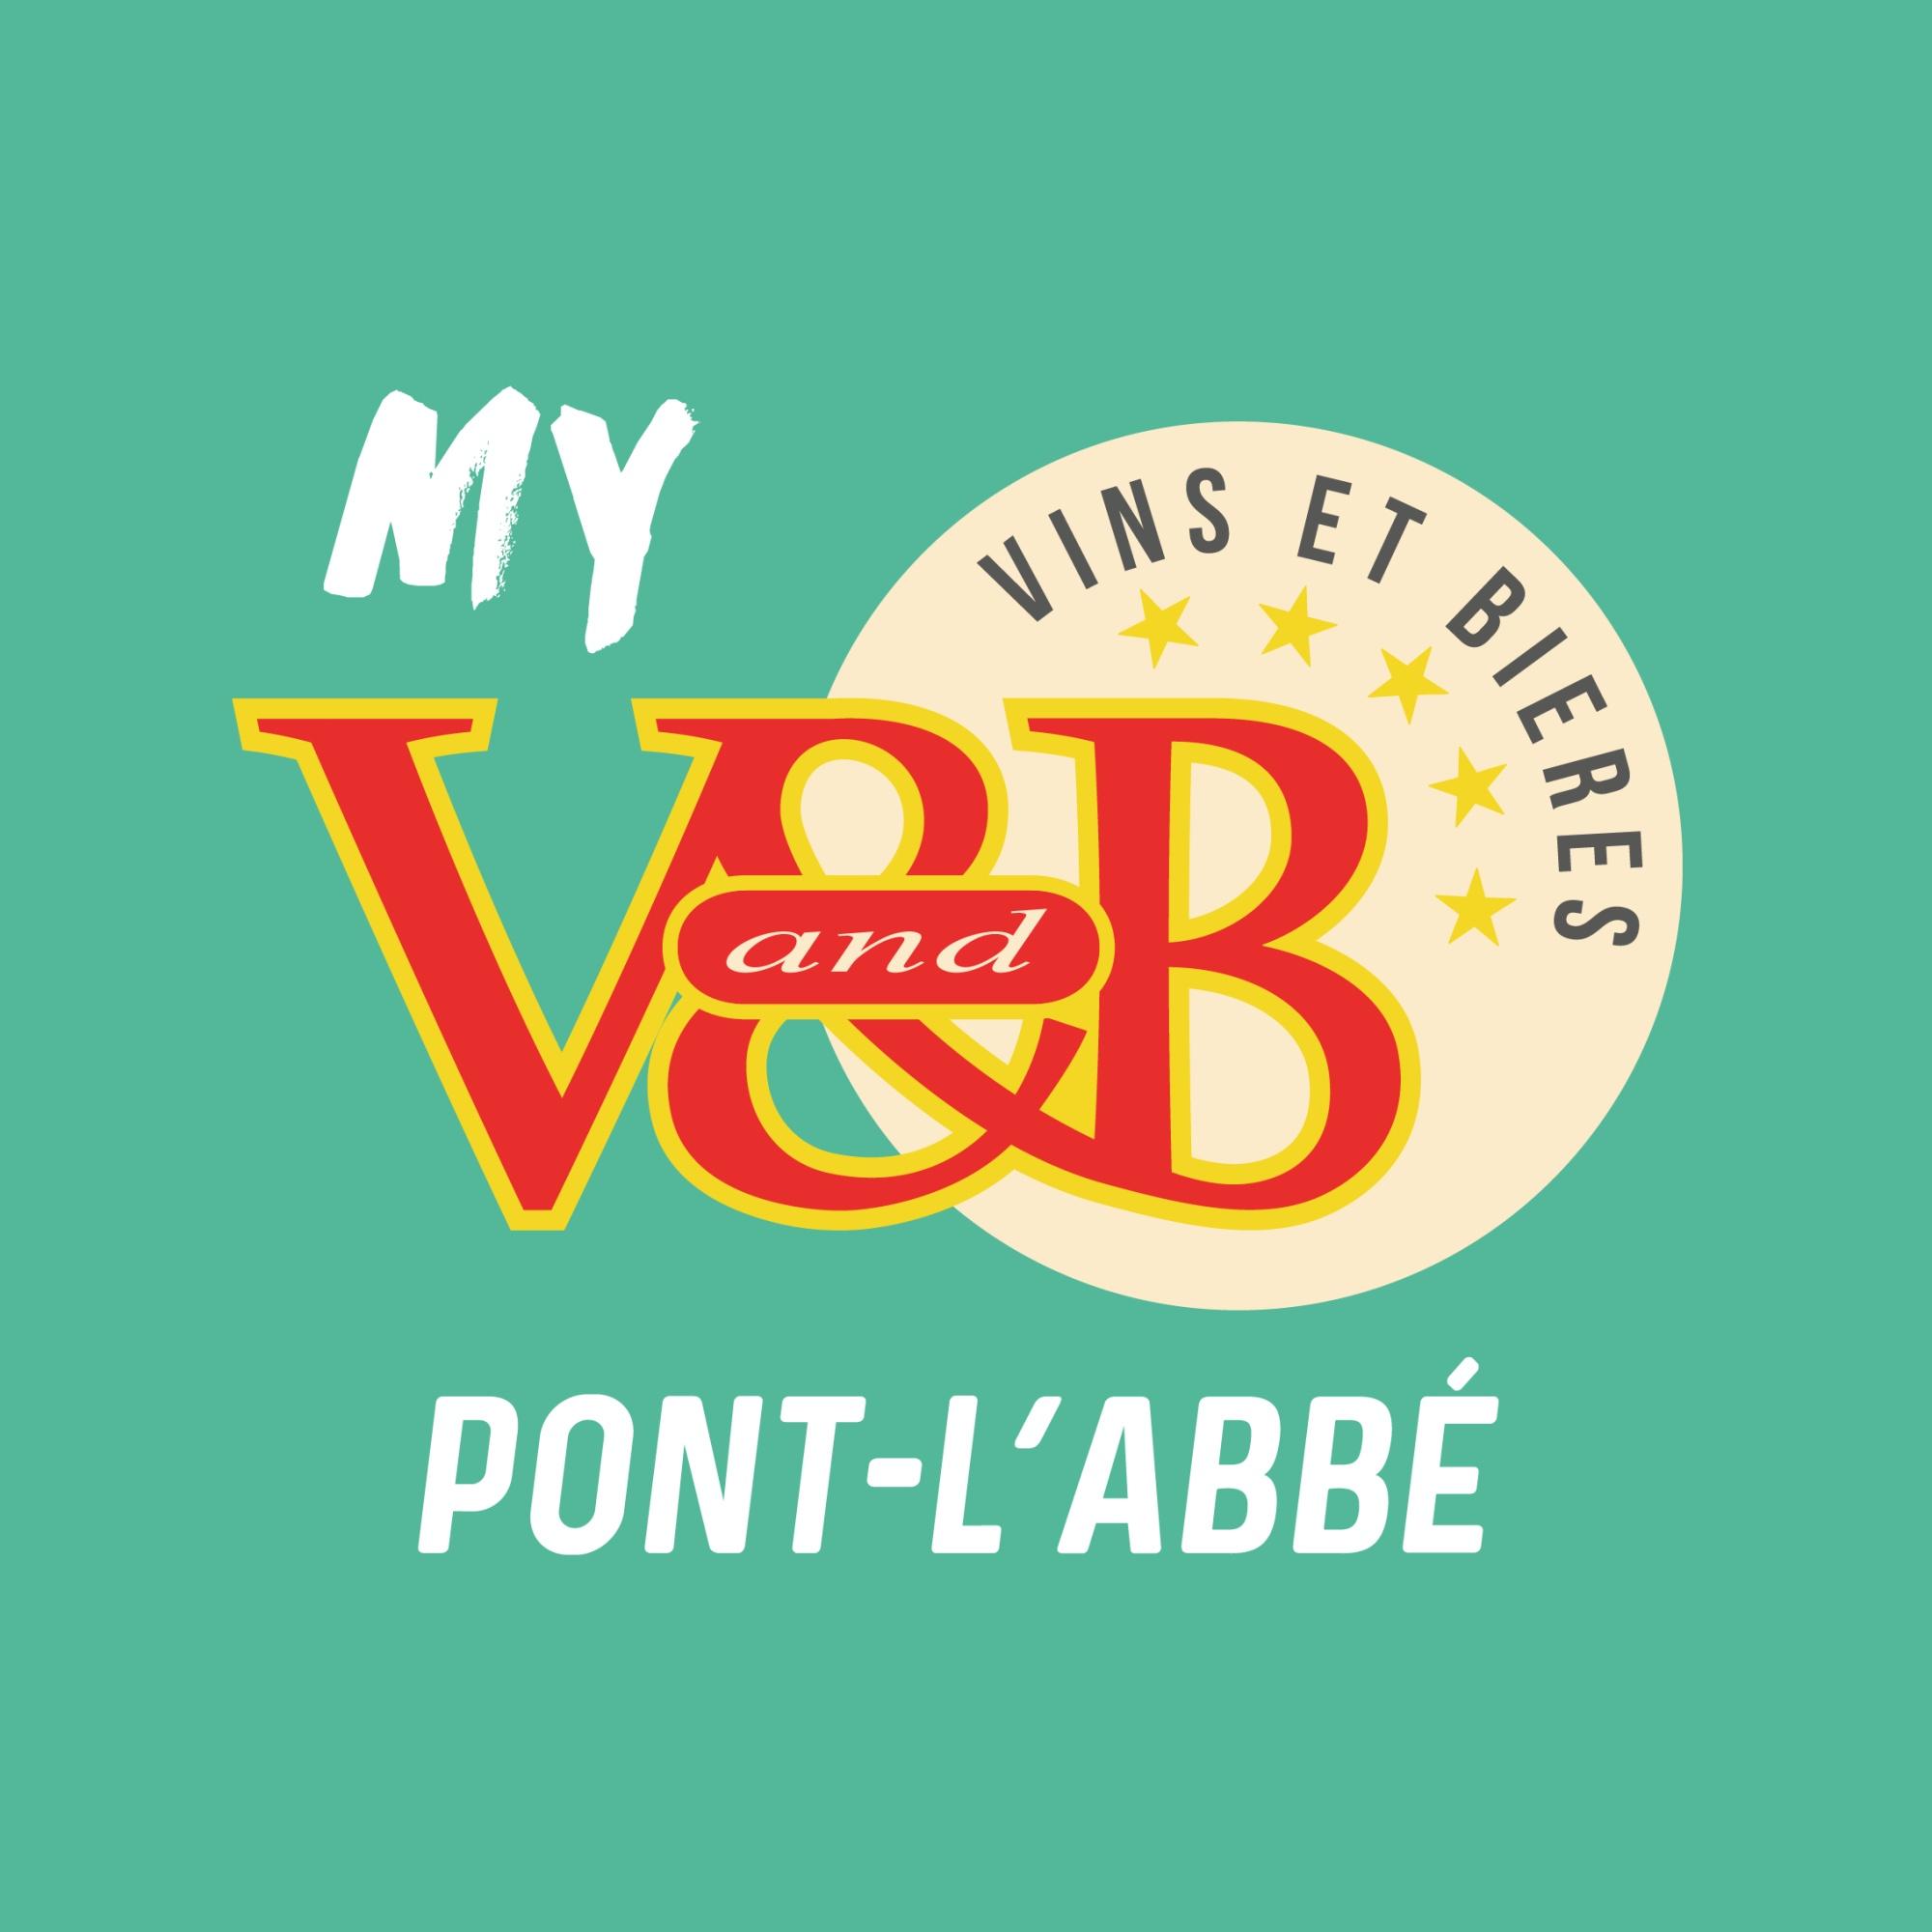 V And B Pont L'abbé